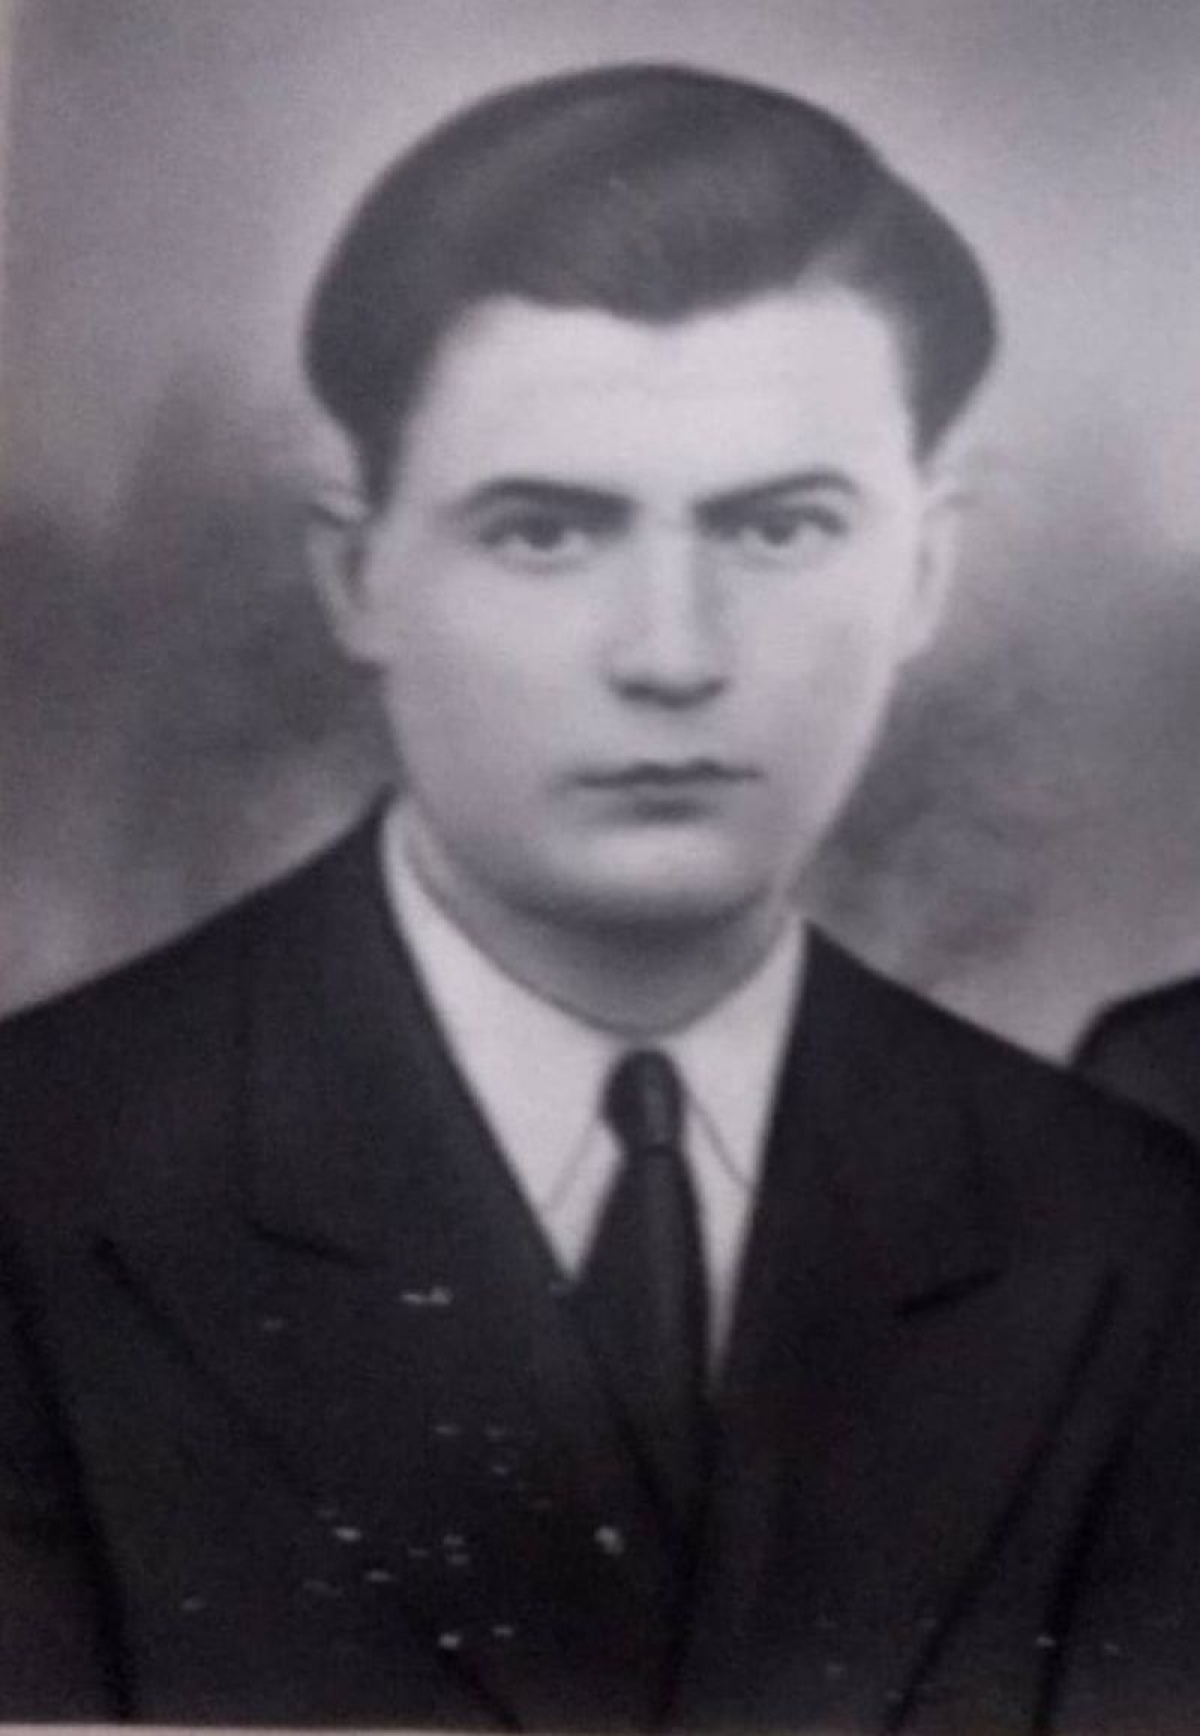 Γιάννης Μαυρέλης: Ενας απο τους εκτελεσθέντες στα Καλύβια Αγρινίου την 31/7/1944